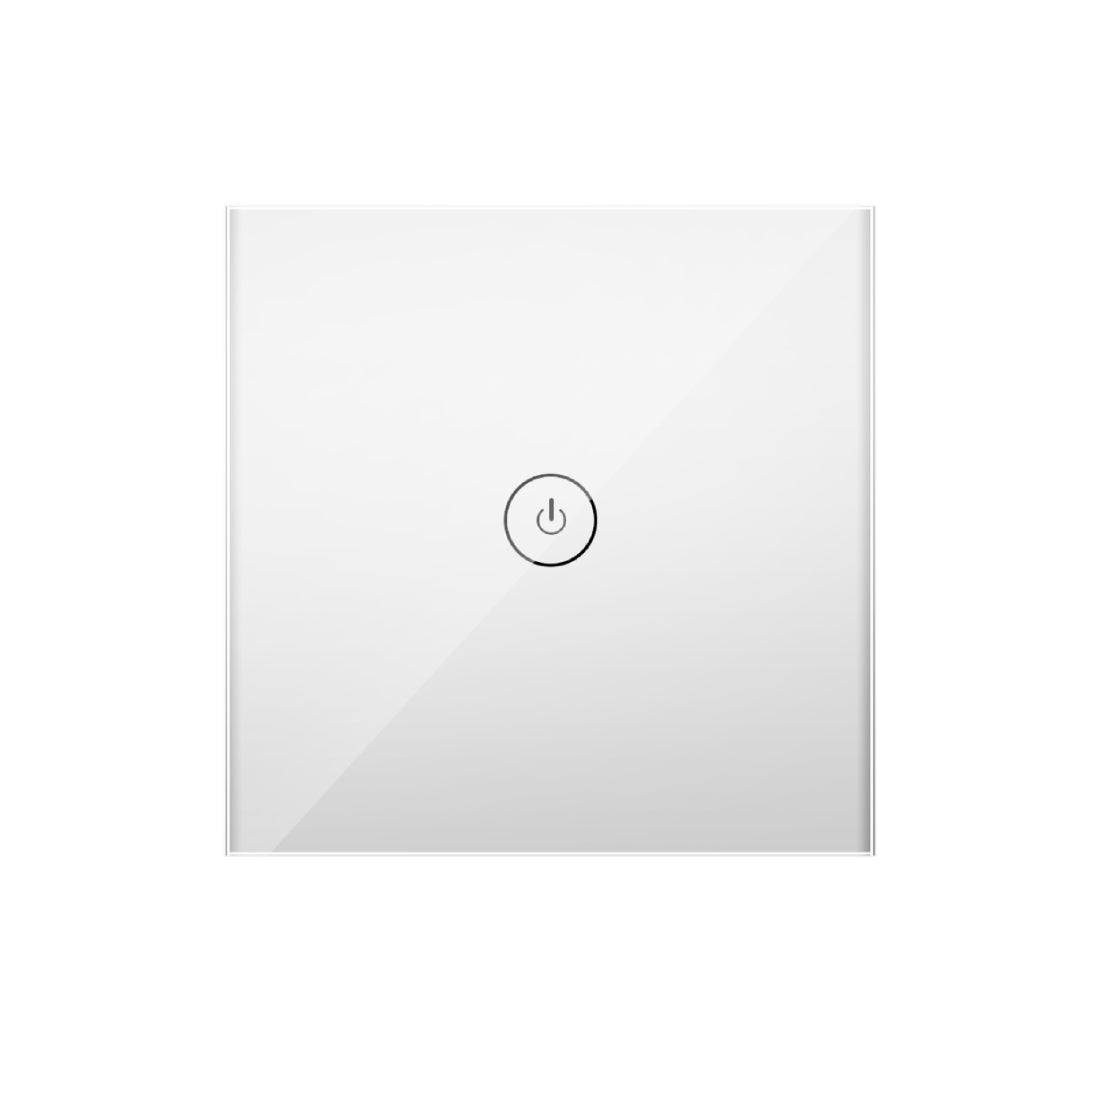 Meross Smart Two Way Light Switch - White - زر الإضاءة - Store 974 | ستور ٩٧٤